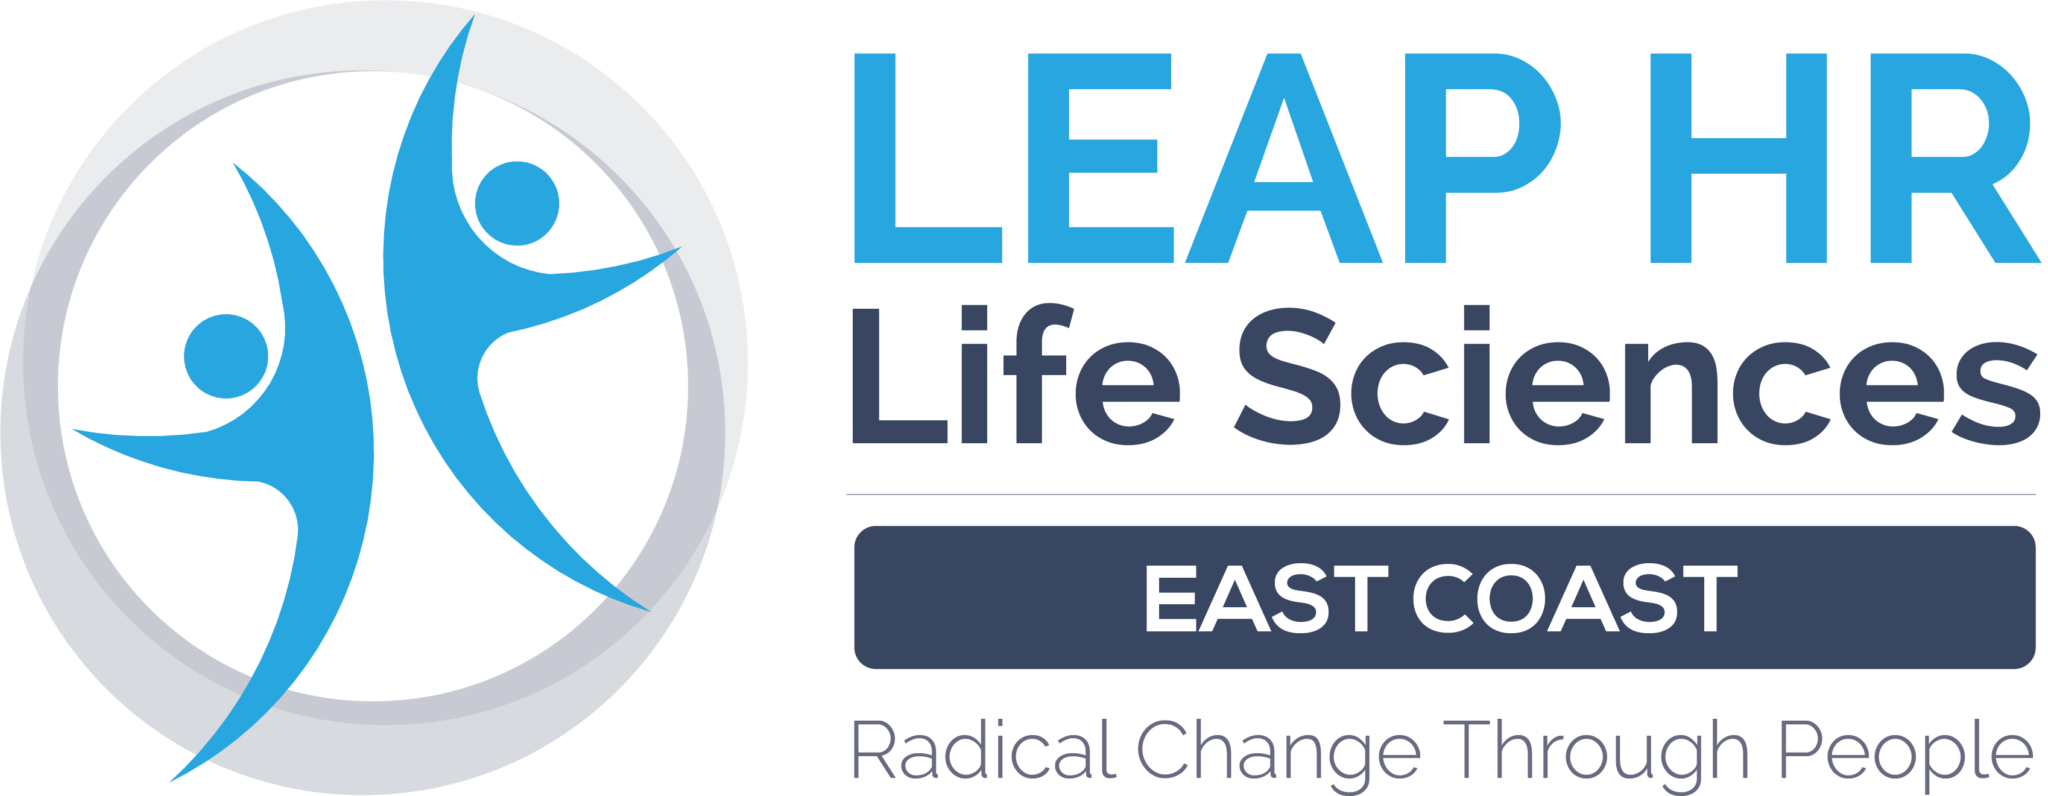 LEAP Life Sciences East Logo